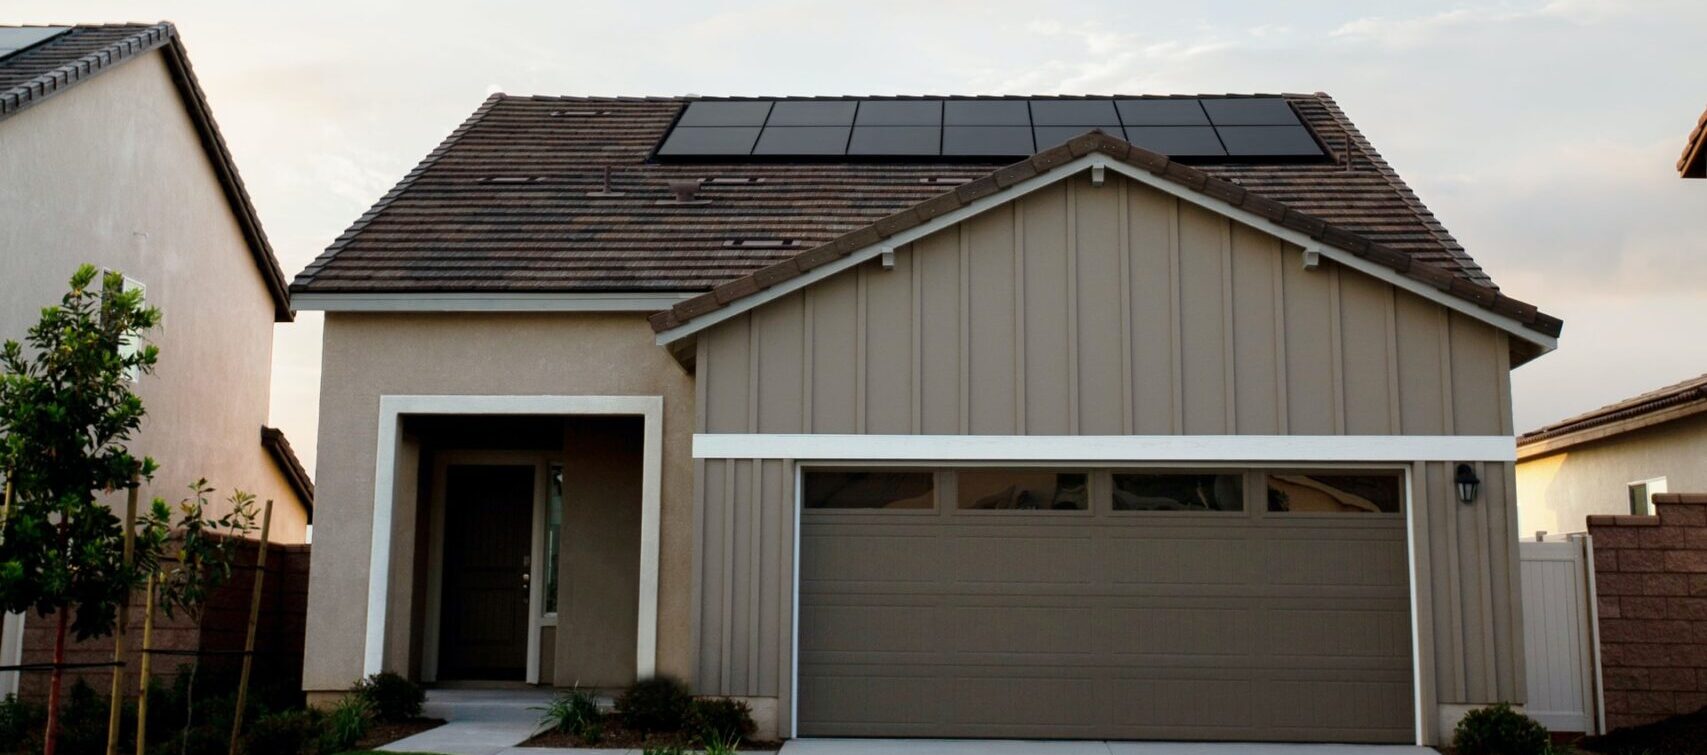 Casa Com Paineis Solares - O Que Levar Em Consideração Ao Investir Em Energia Solar?